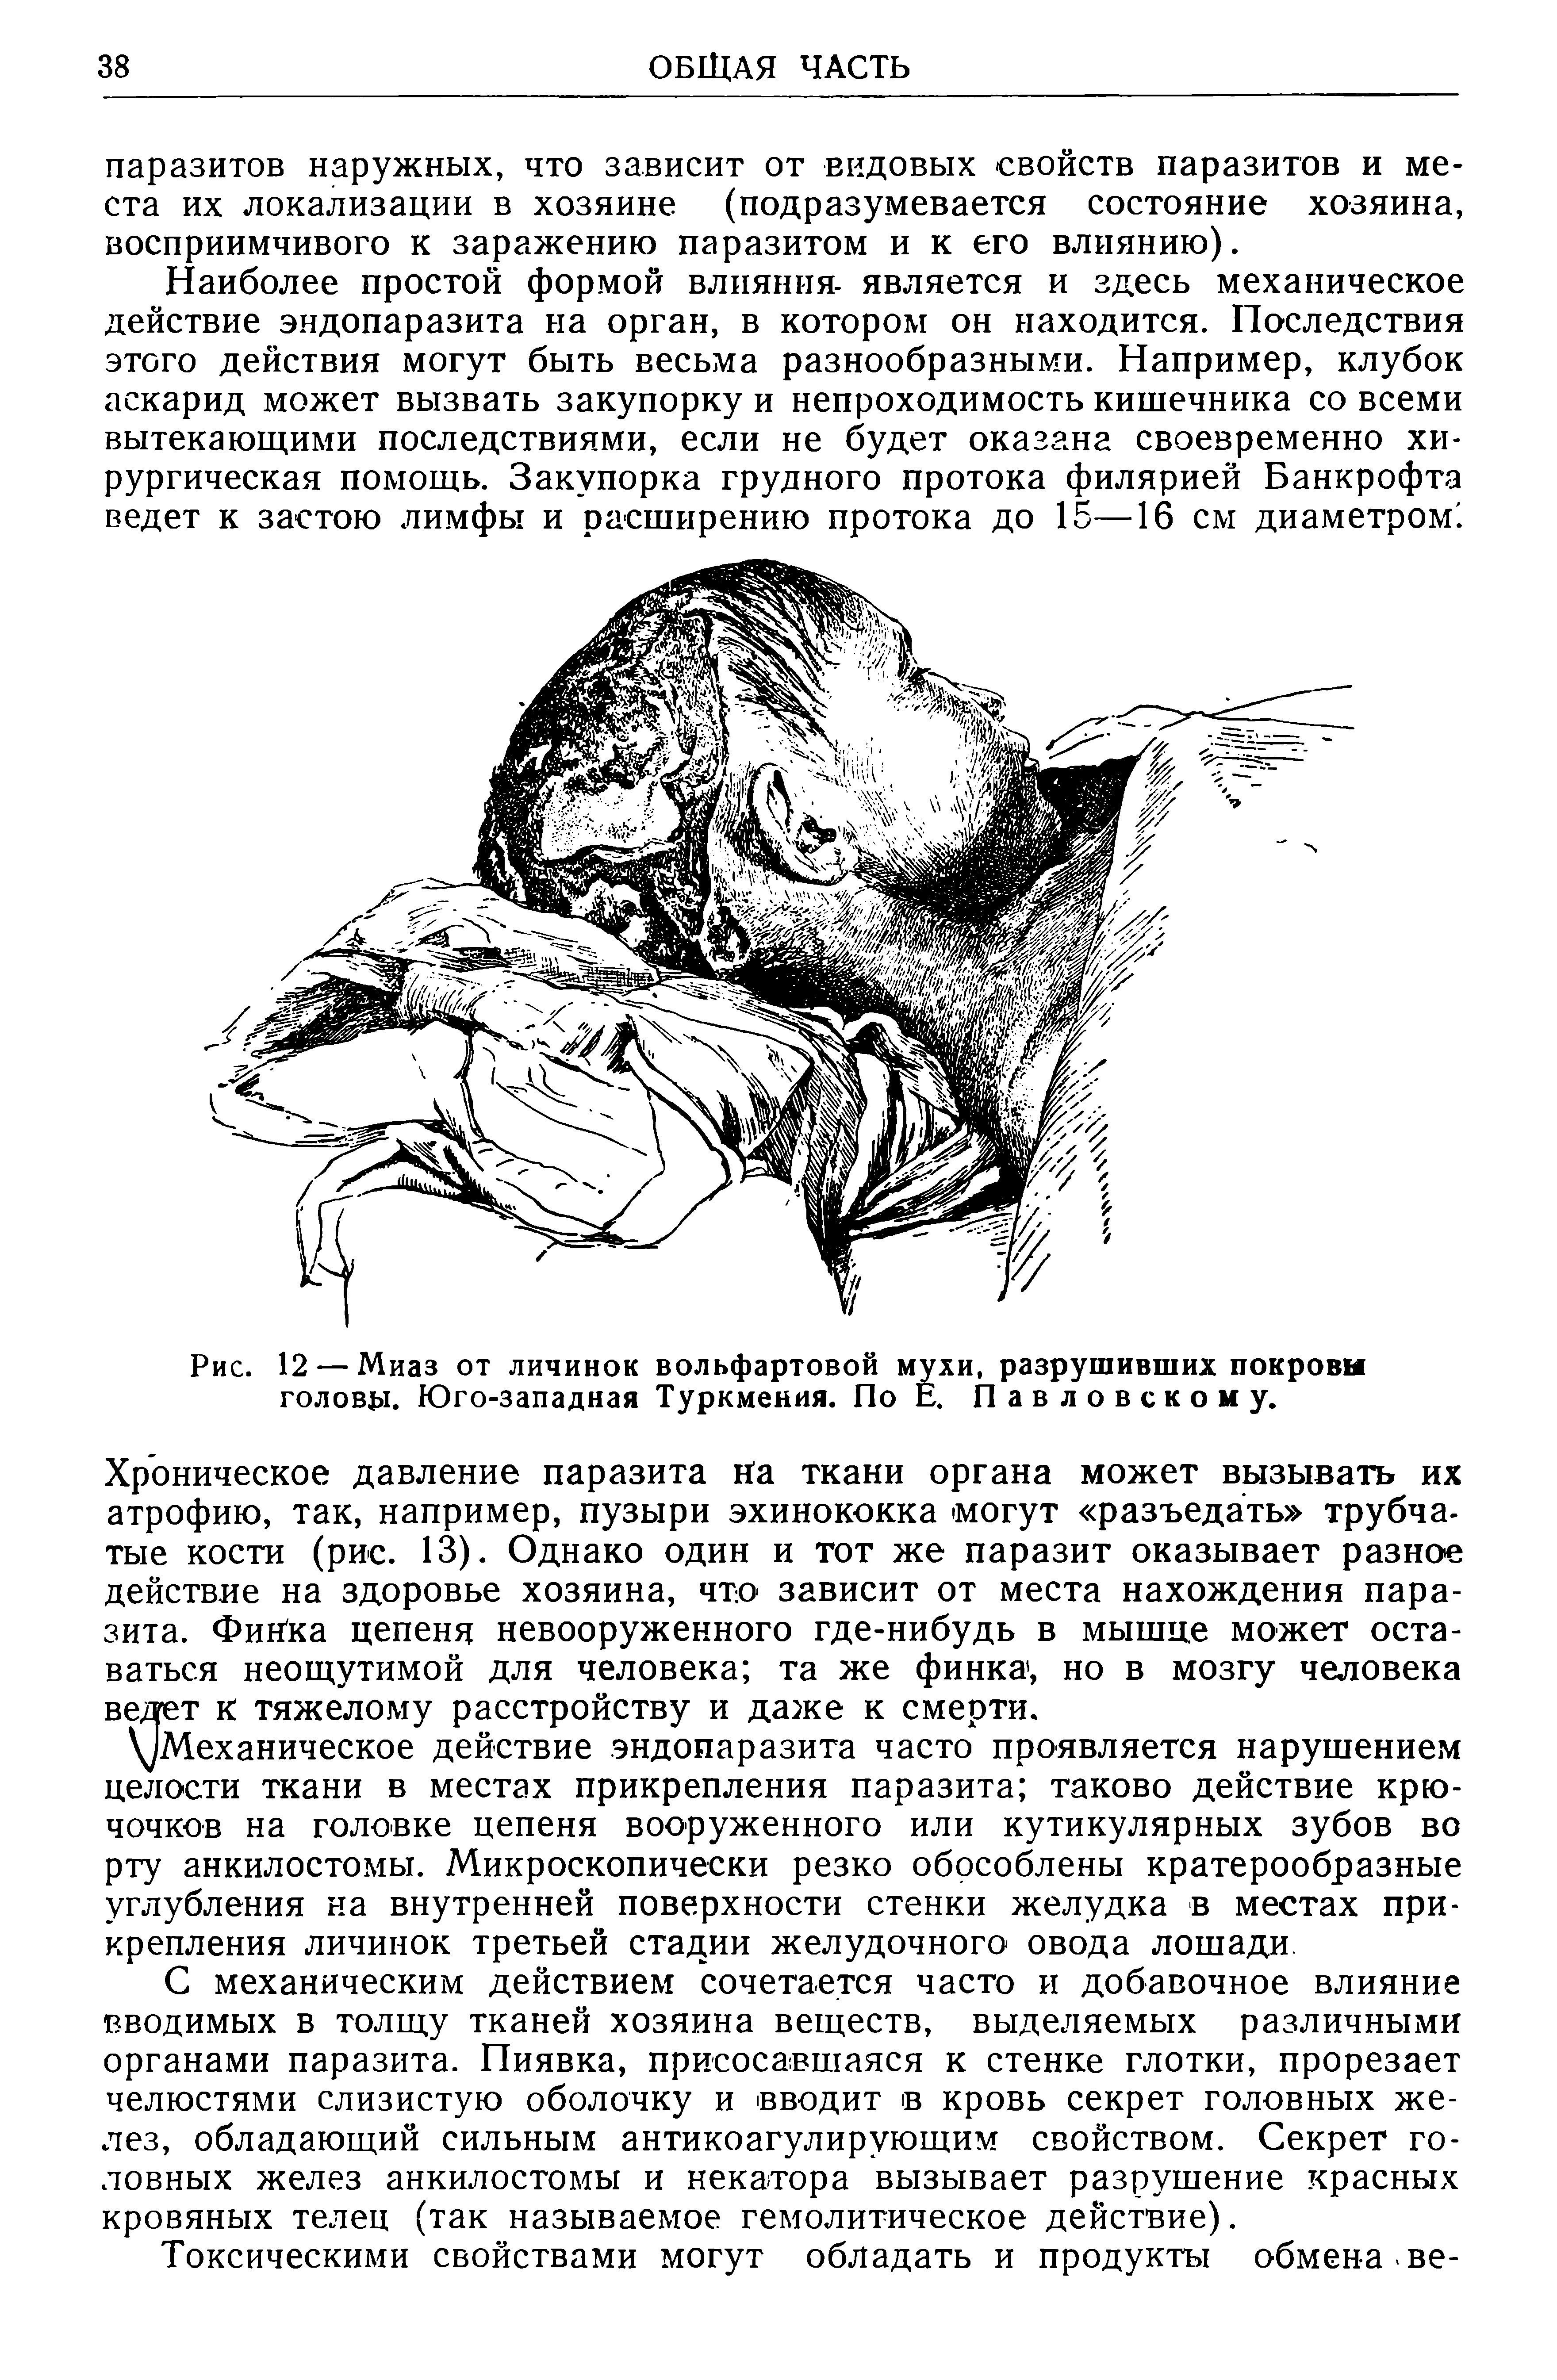 Рис. 12 — Миаз от личинок вольфартовой мухи, разрушивших покровы голову. Юго-западная Туркмения. По Е. Павловскому.